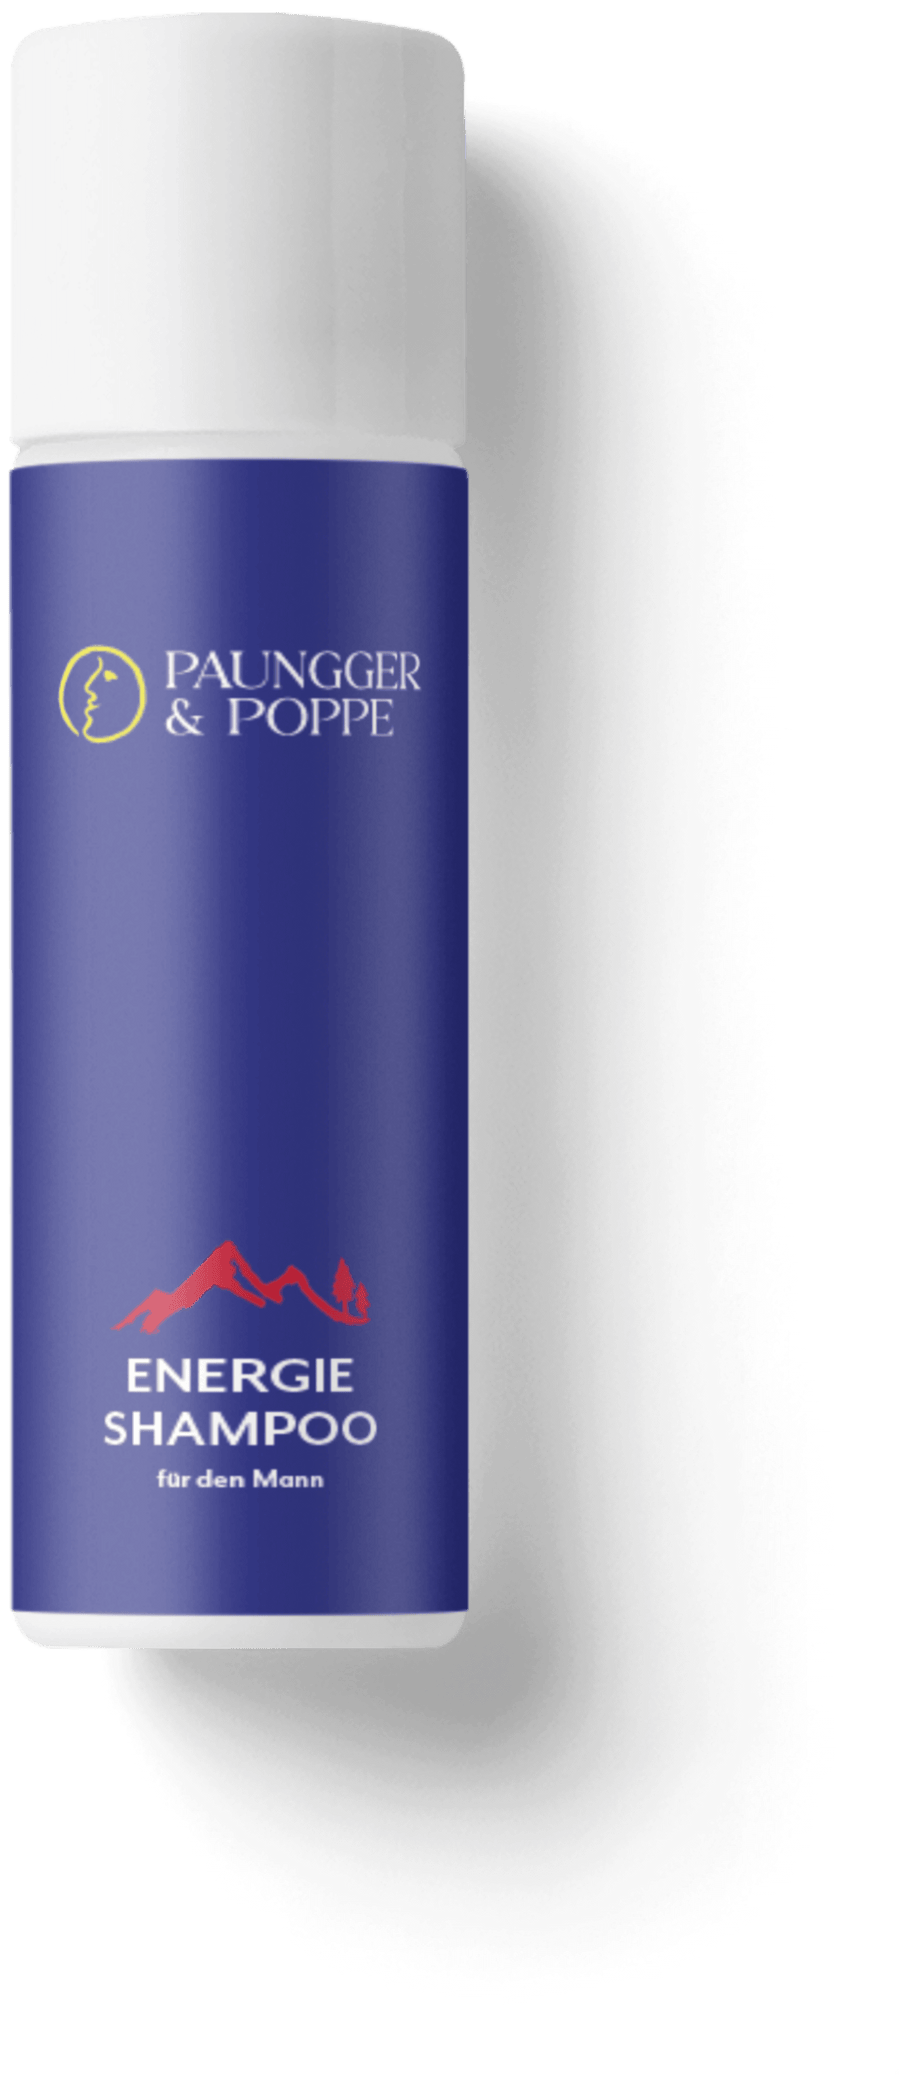 Energie Männer Shampoo - erfrischend und nicht nur für Männer | Mondversand